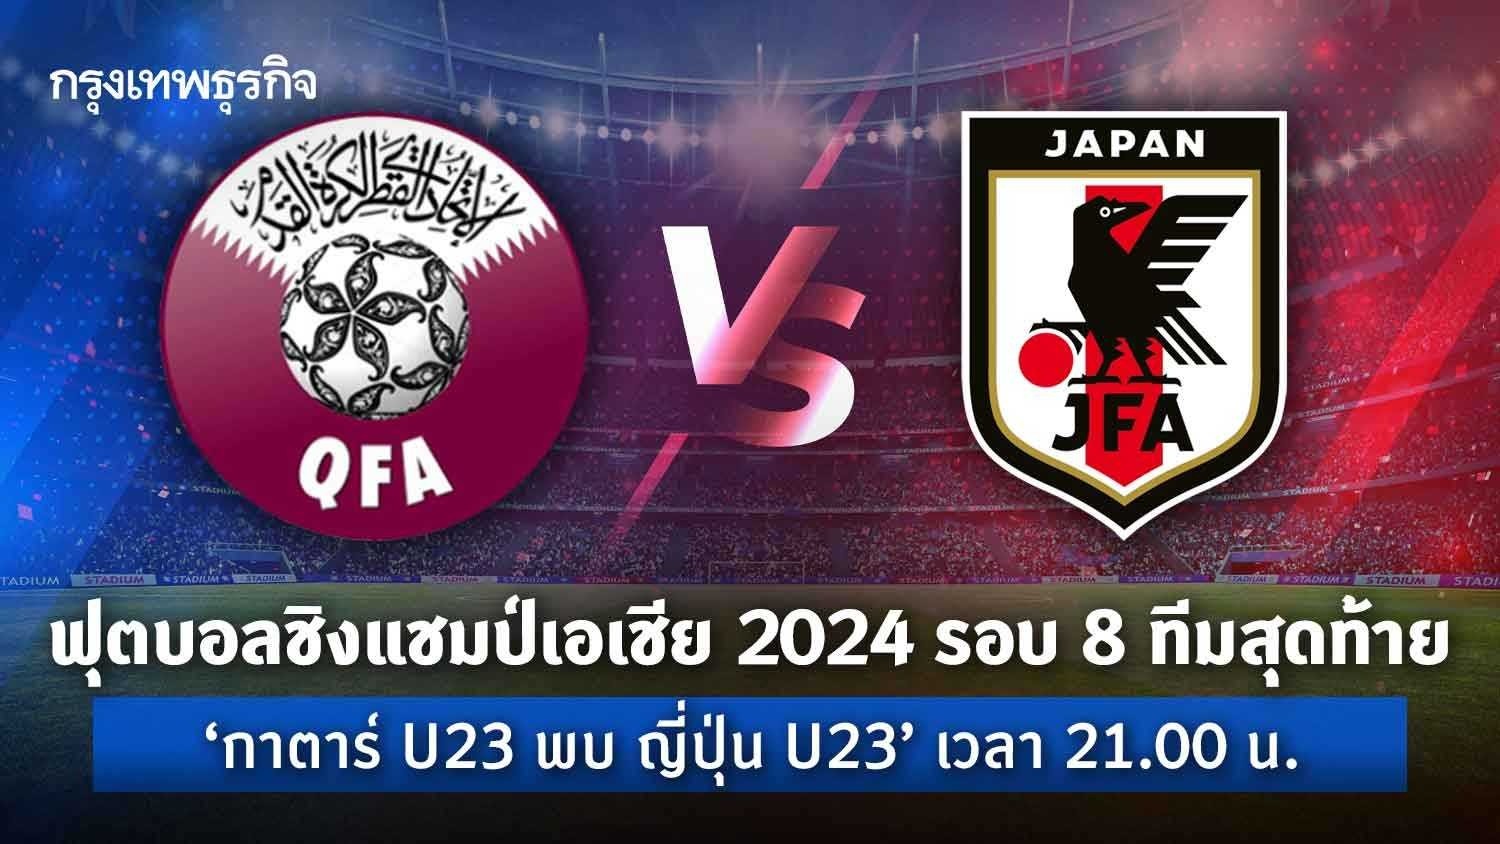 ผลบอล 'กาตาร์ u23 แพ้ ญี่ปุ่น u23'2-4 ดูบอลสด ฟุตบอลชิงแชมป์เอเชีย 2024